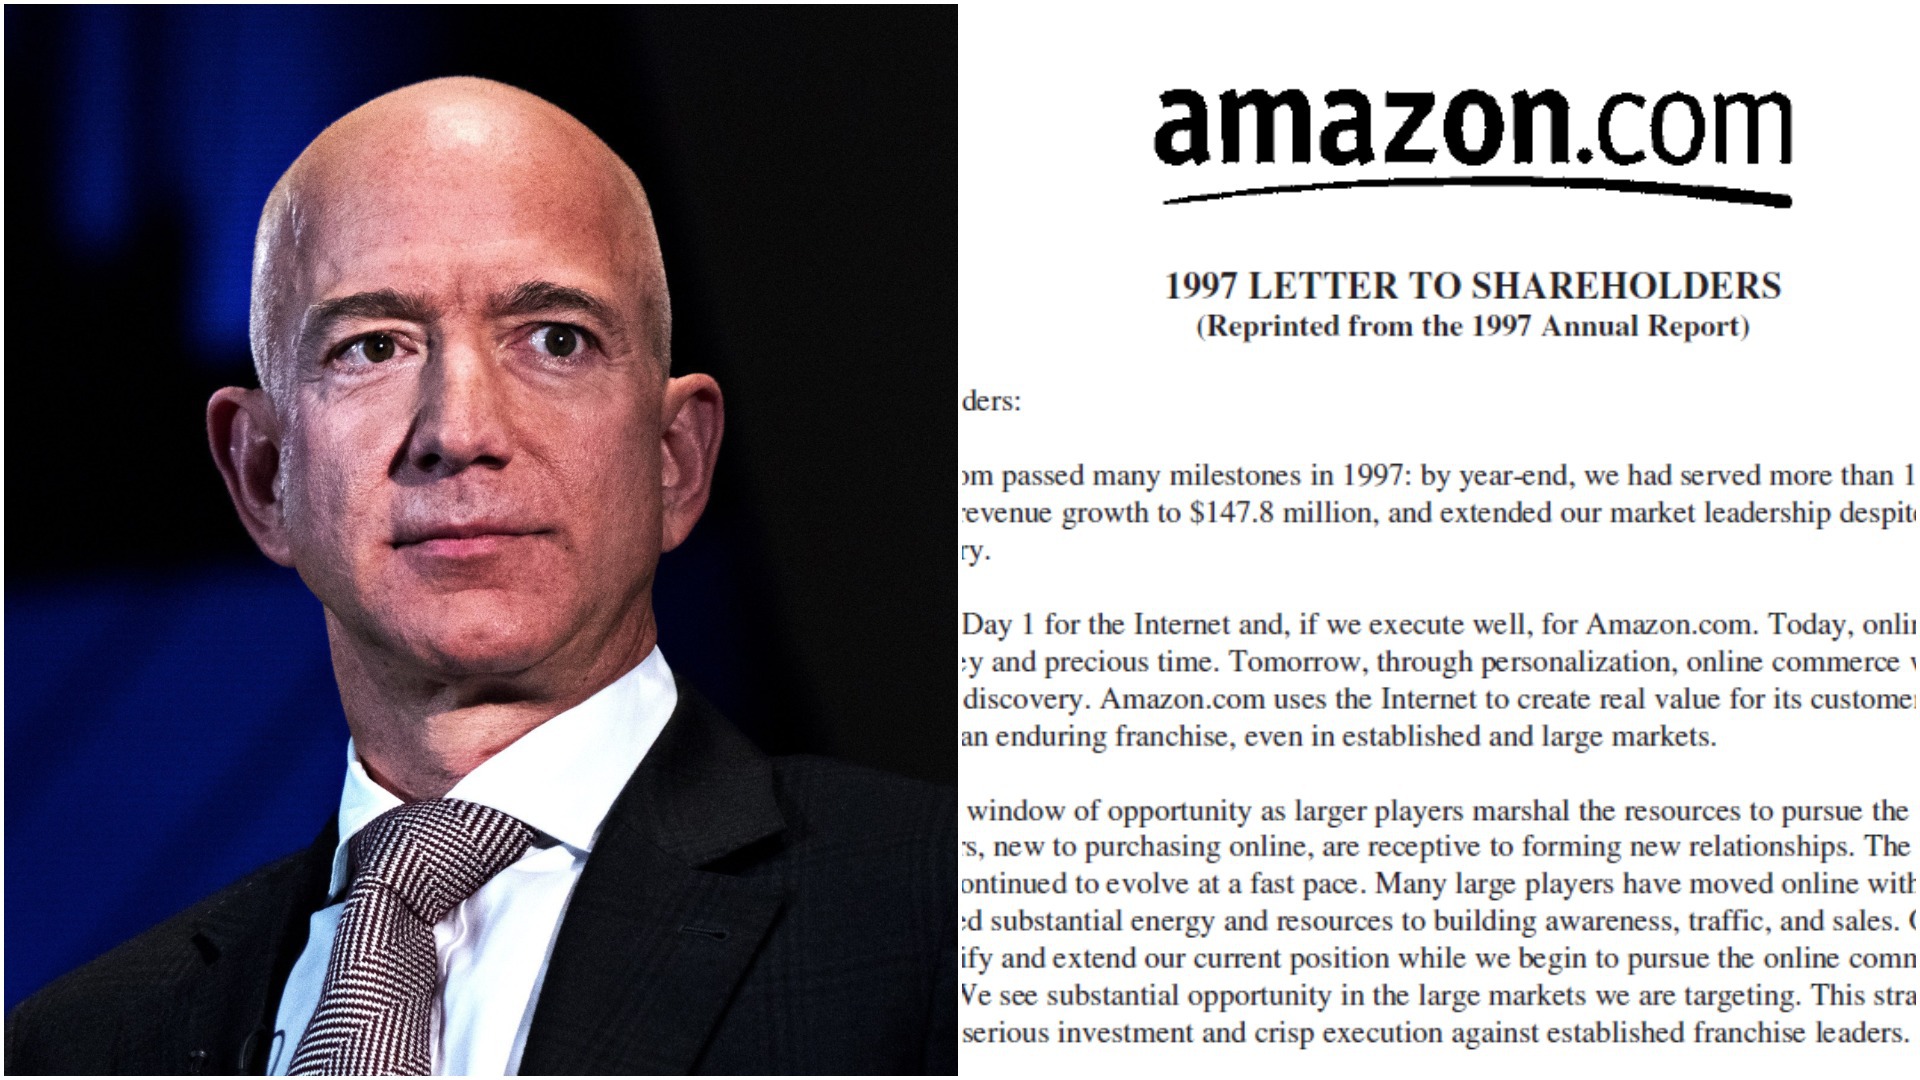 Voi ce făceaţi în 1997? Scrisoarea incredibilă de acum 25 de ani către acţionari a lui Jeff Bezos, fondatorul Amazon, care a reuşit dintr-o idee să facă o companie de peste 1,5 trilioane dolari. Ce le spunea, atunci, celor care voiau să lucreze la amazon.com